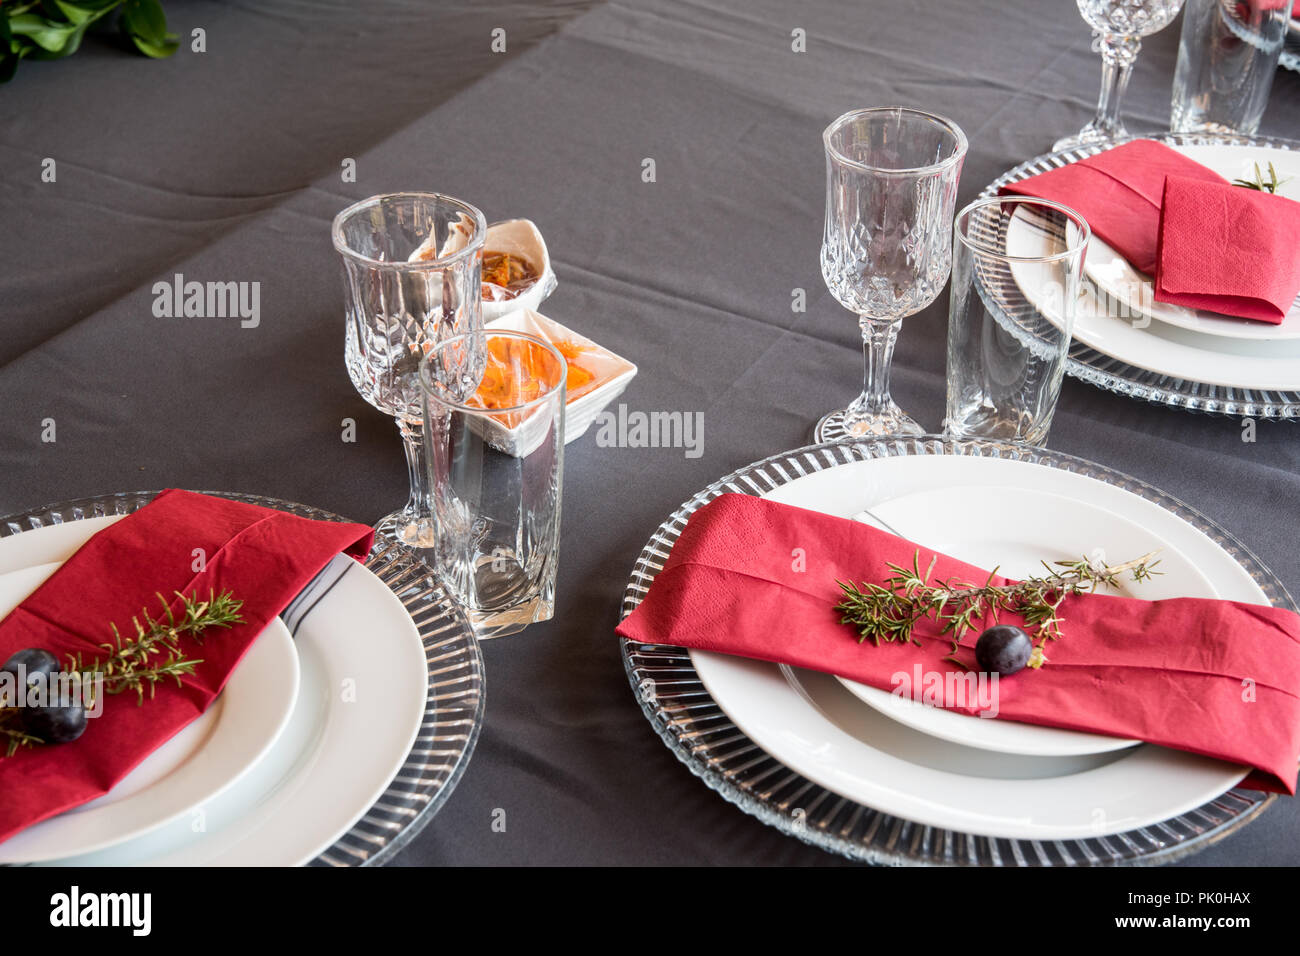 La table du déjeuner ensemble avec des plaques en gris et blanc, de belles assiettes, serviette rouge, petite branche d'arbre décoratif, deux cépages avec décor de fruits et fleurs Banque D'Images